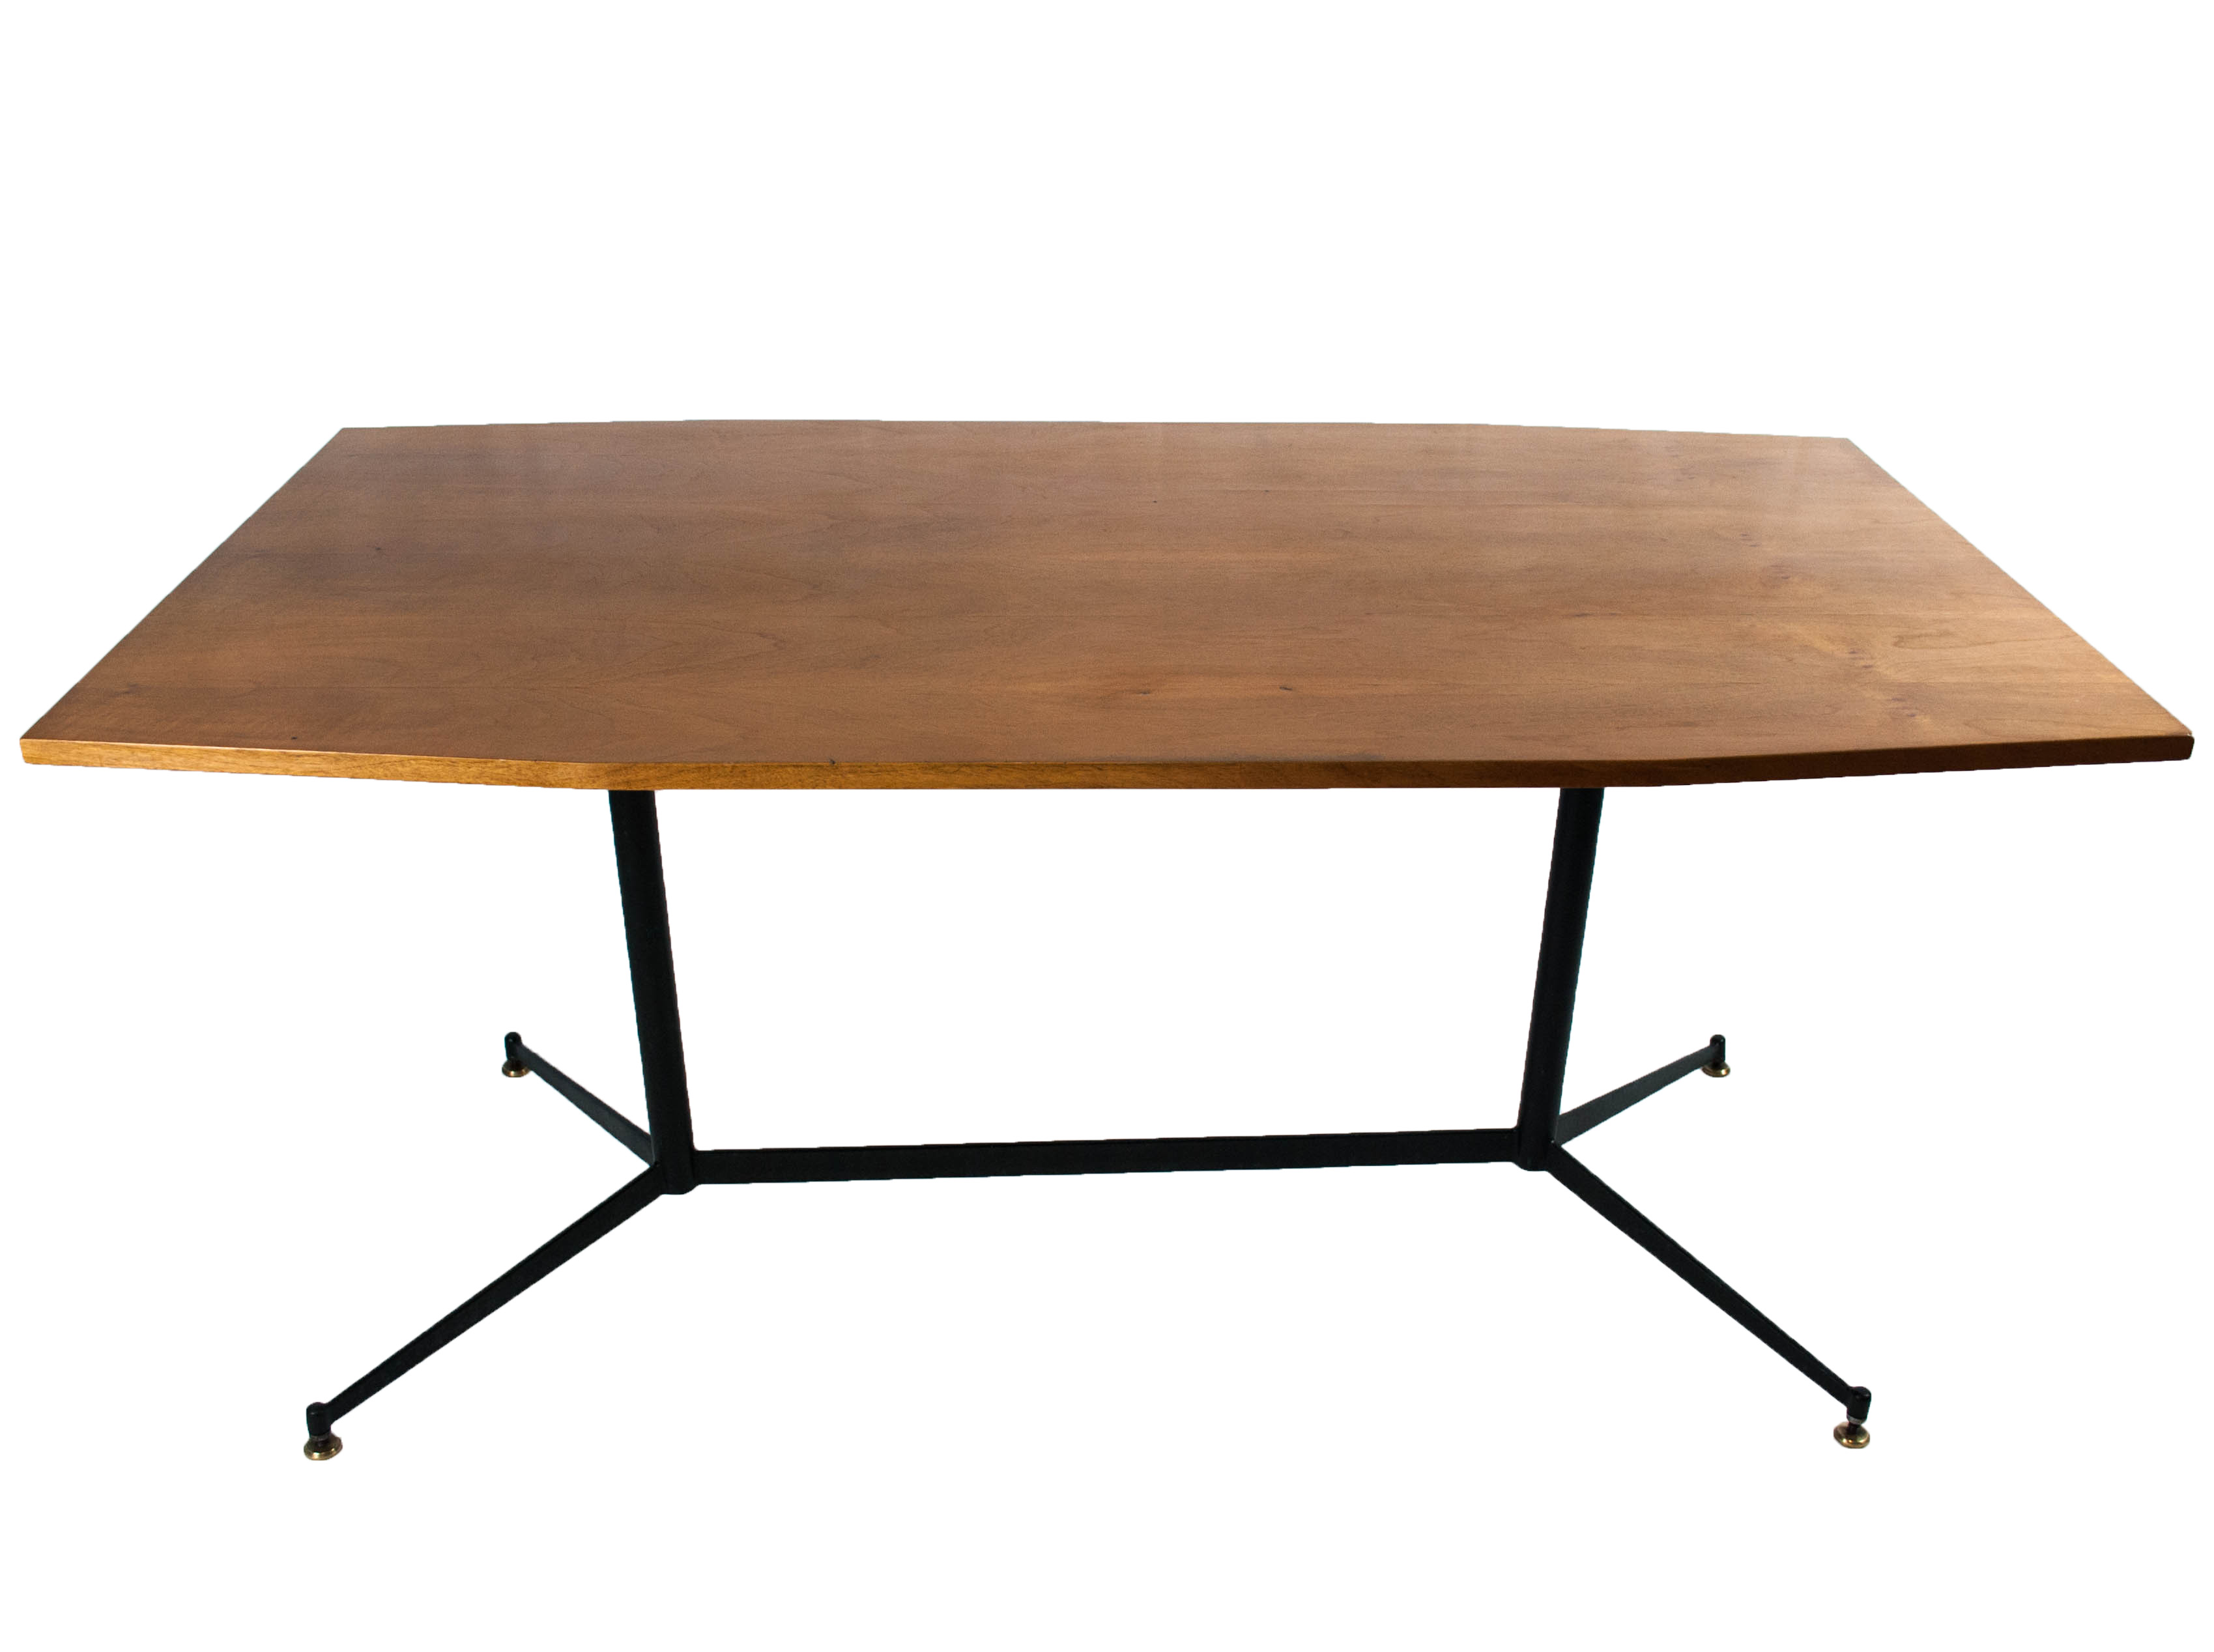 a27-italian-vintage-table-gio-ponti-style-60